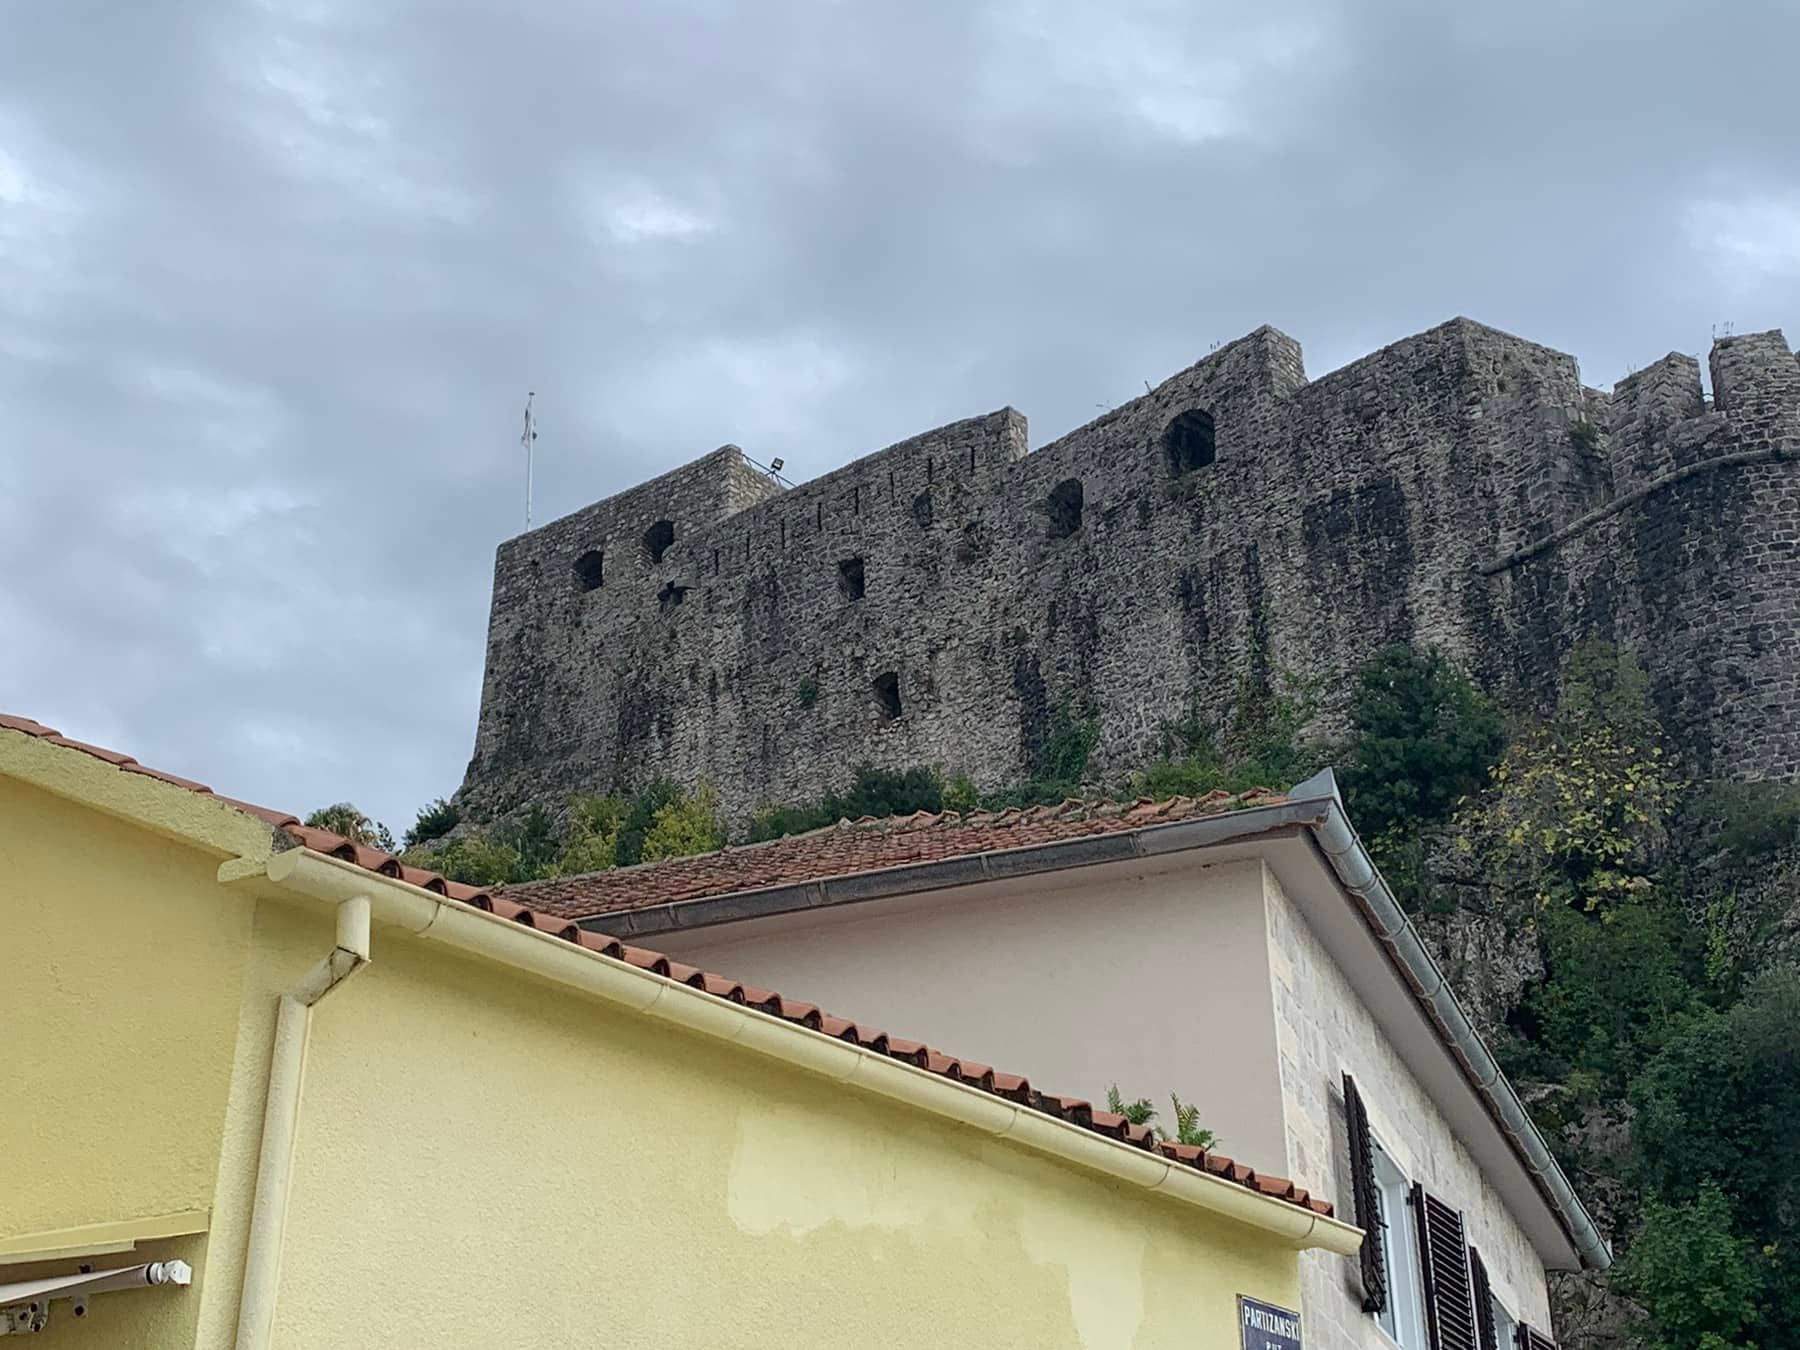 Vjetar ili politika - ko je oduvao crnogorsku zastavu sa tvrđave u Herceg Novom?